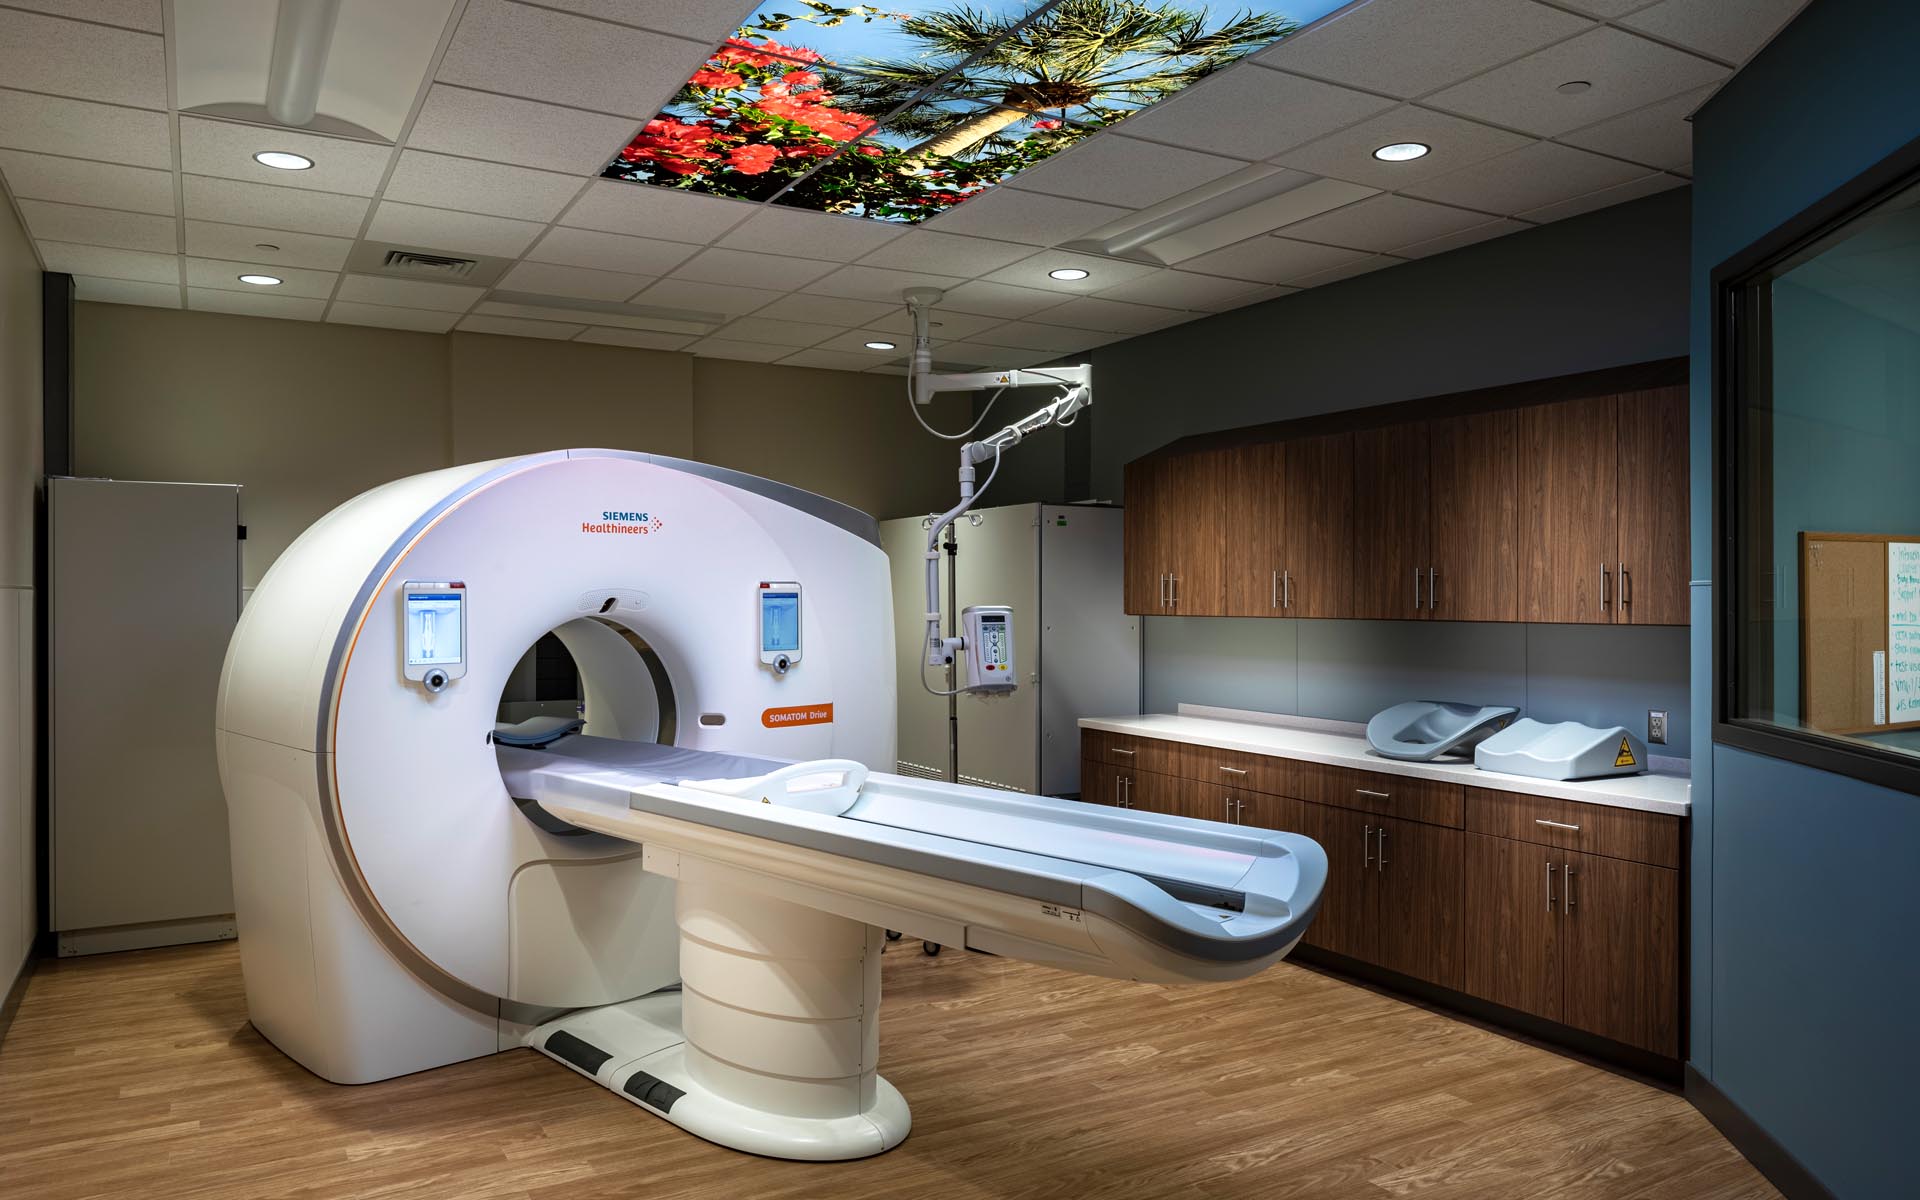 Beacon Health Granger Hospital MRI - Panzica Construction